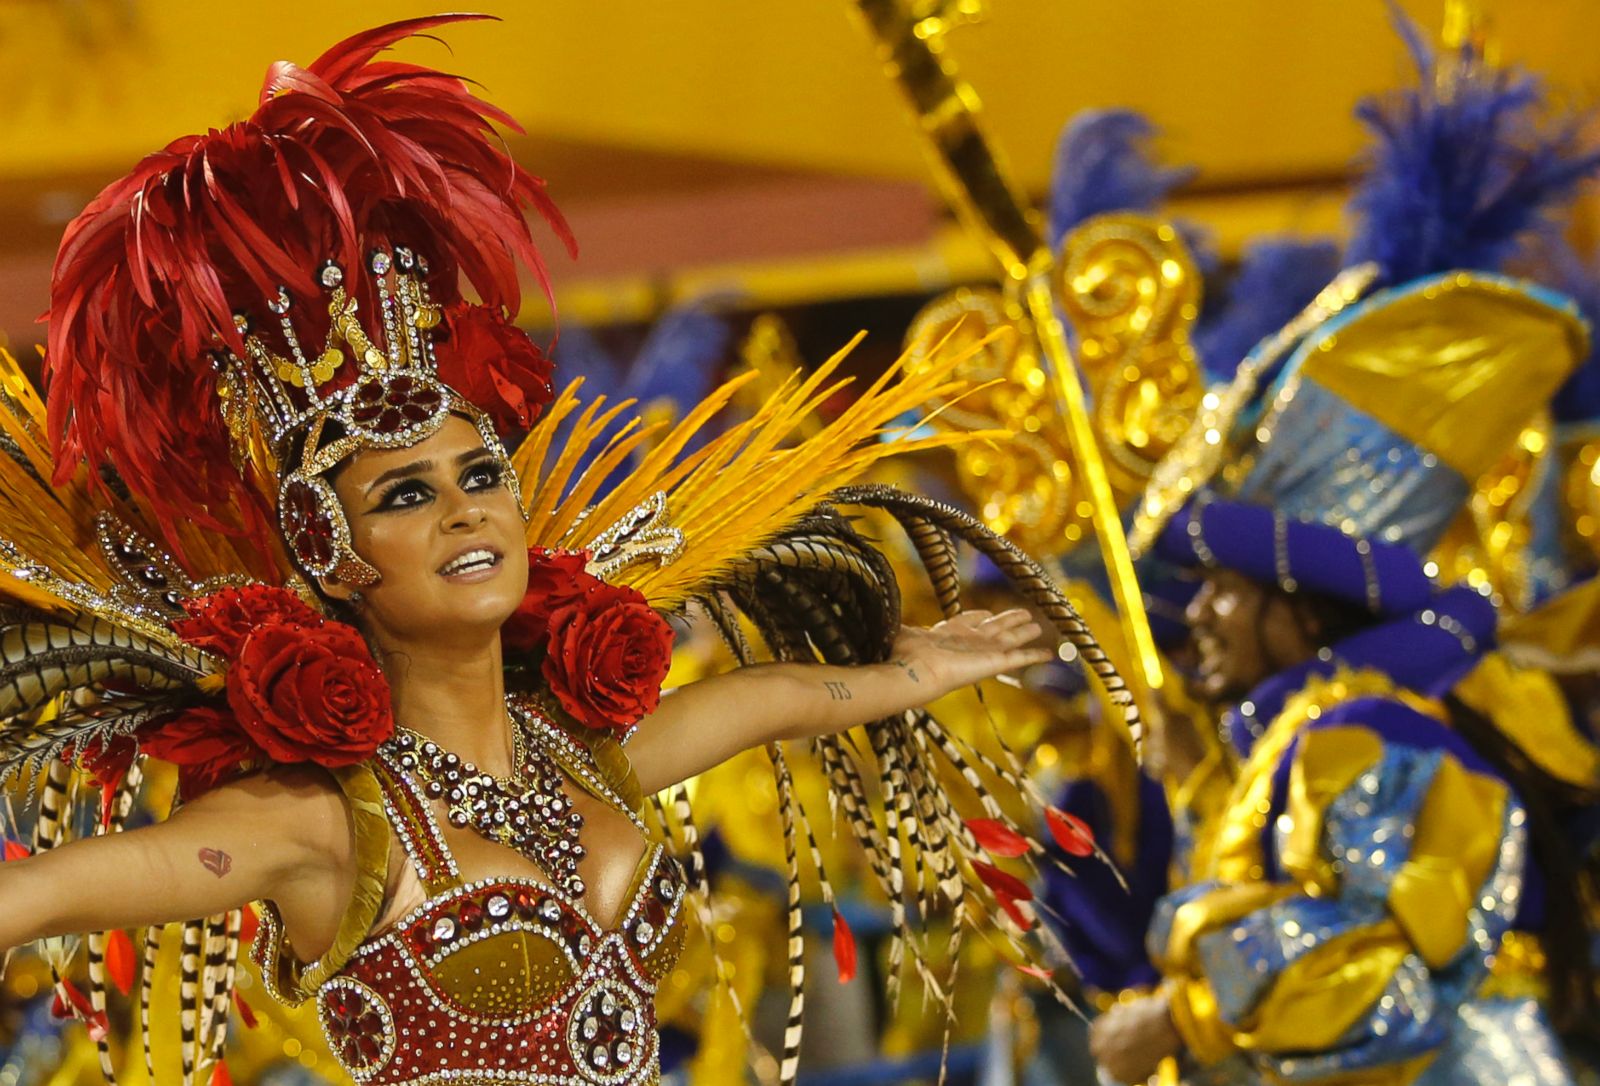 Rio de Janeiro - Favelas, Carnaval, Samba